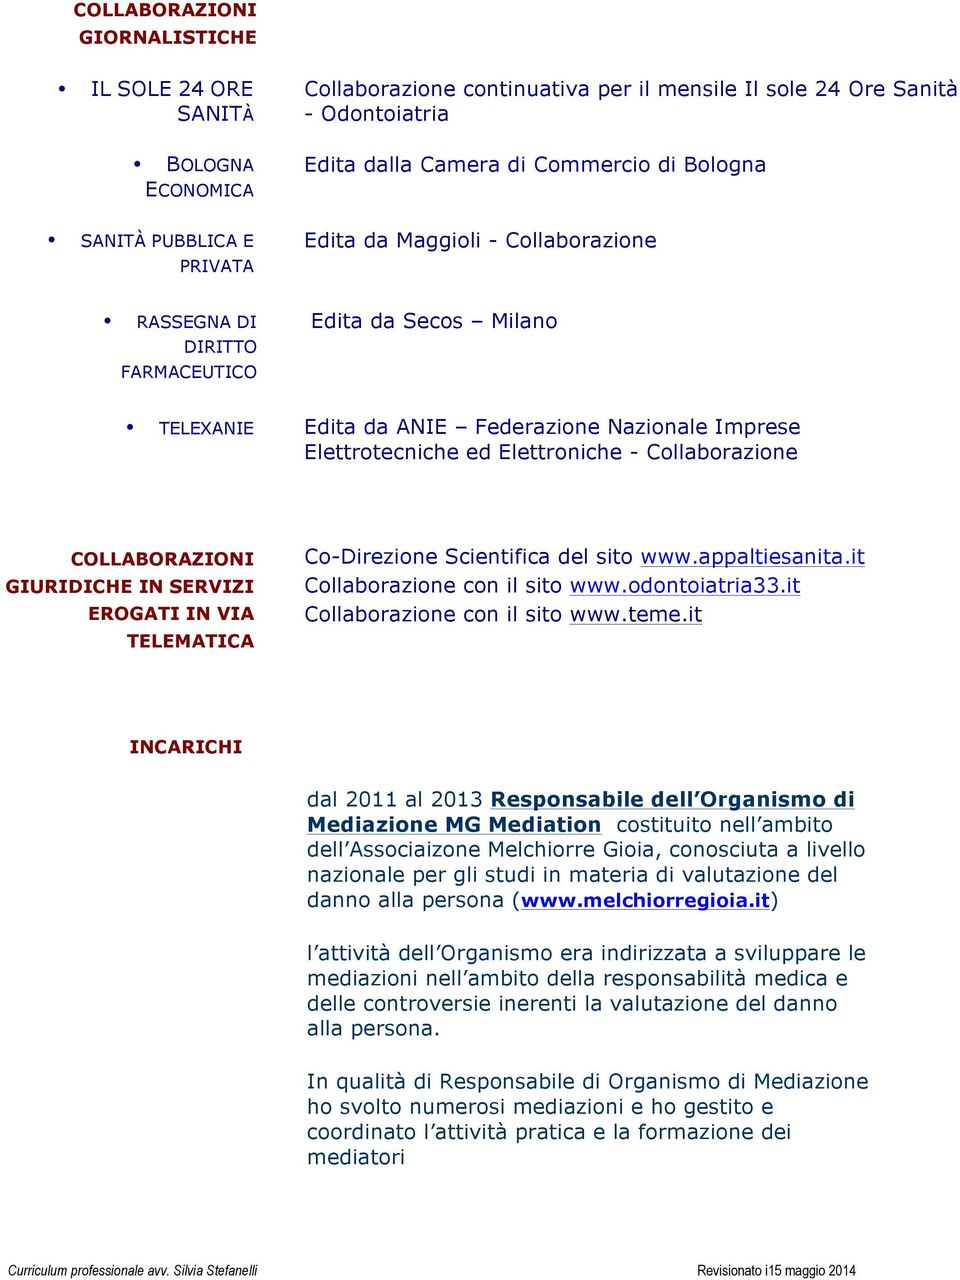 Collaborazione COLLABORAZIONI GIURIDICHE IN SERVIZI EROGATI IN VIA TELEMATICA Co-Direzione Scientifica del sito www.appaltiesanita.it Collaborazione con il sito www.odontoiatria33.